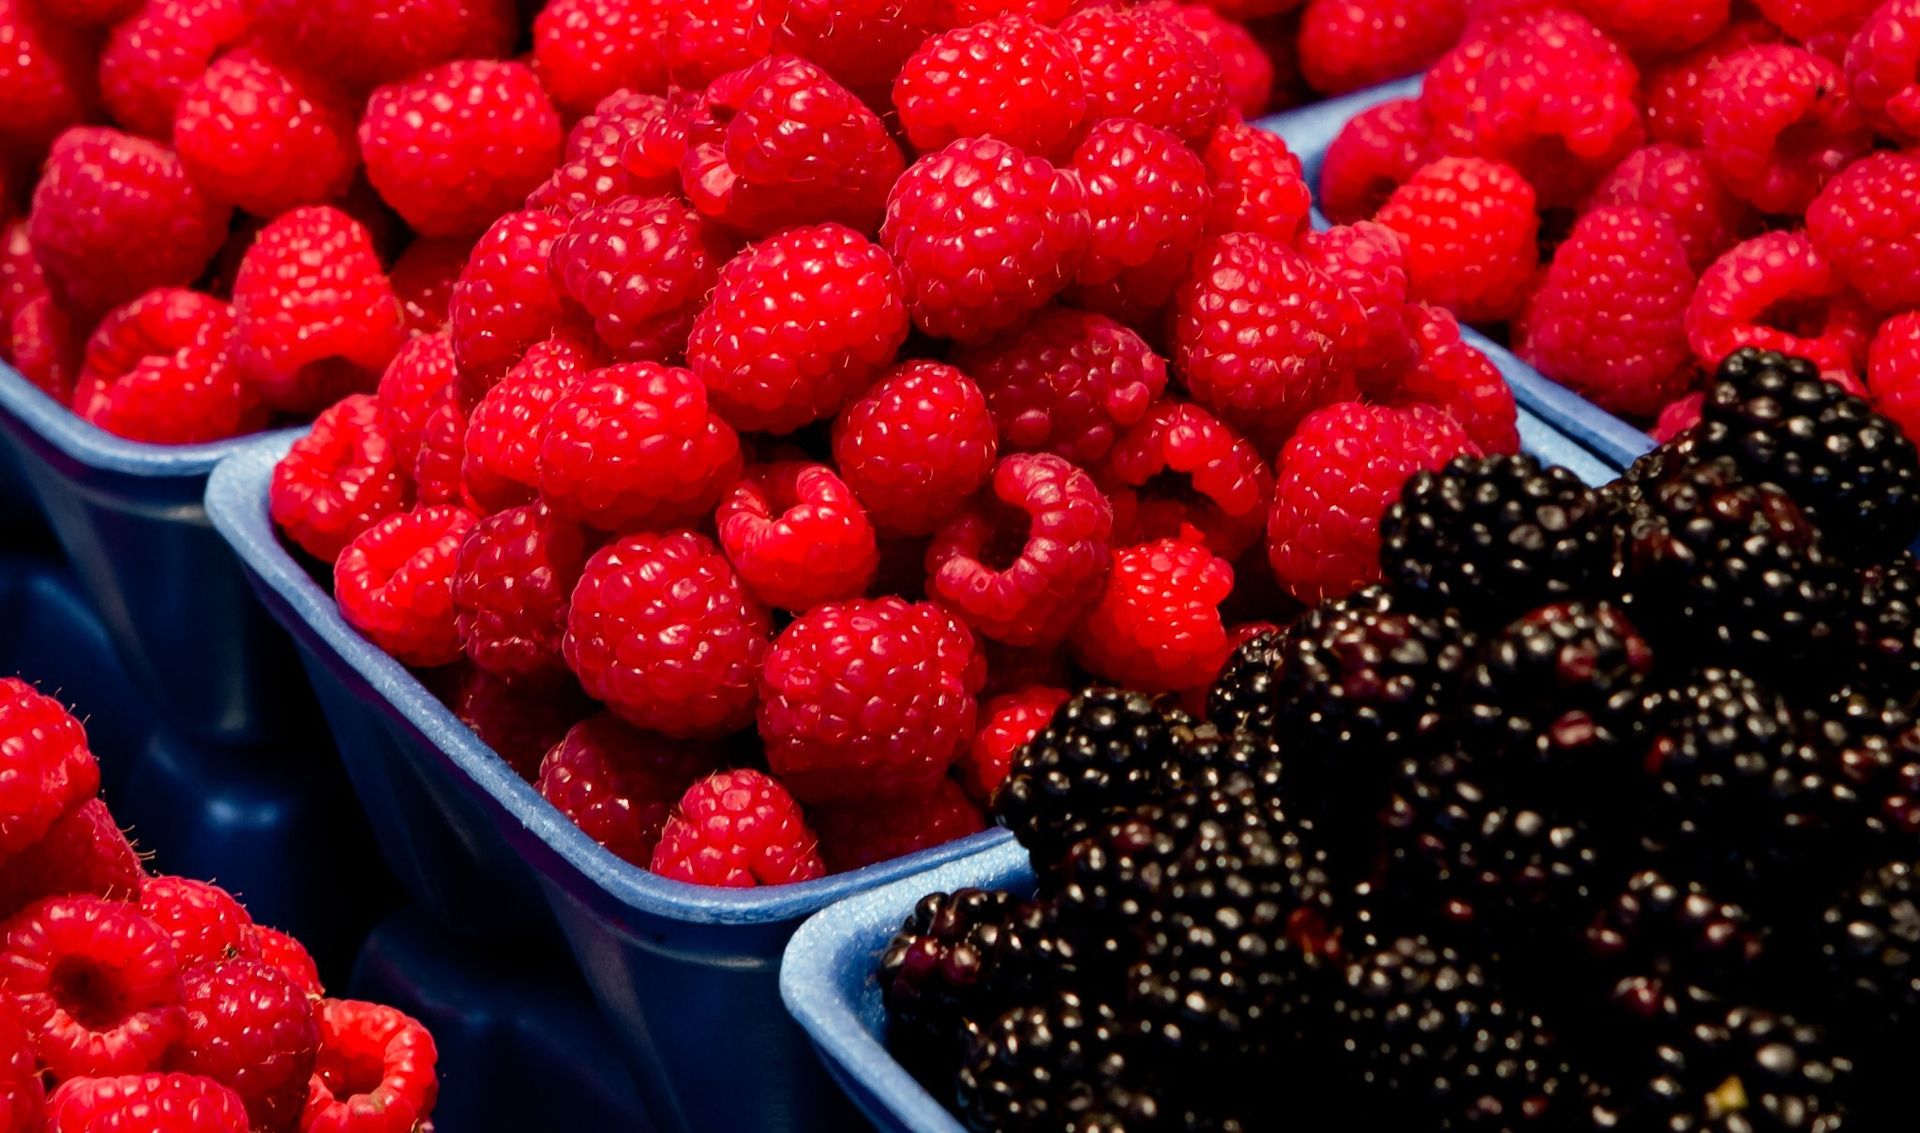 Raspberries and blackberries in baskets.